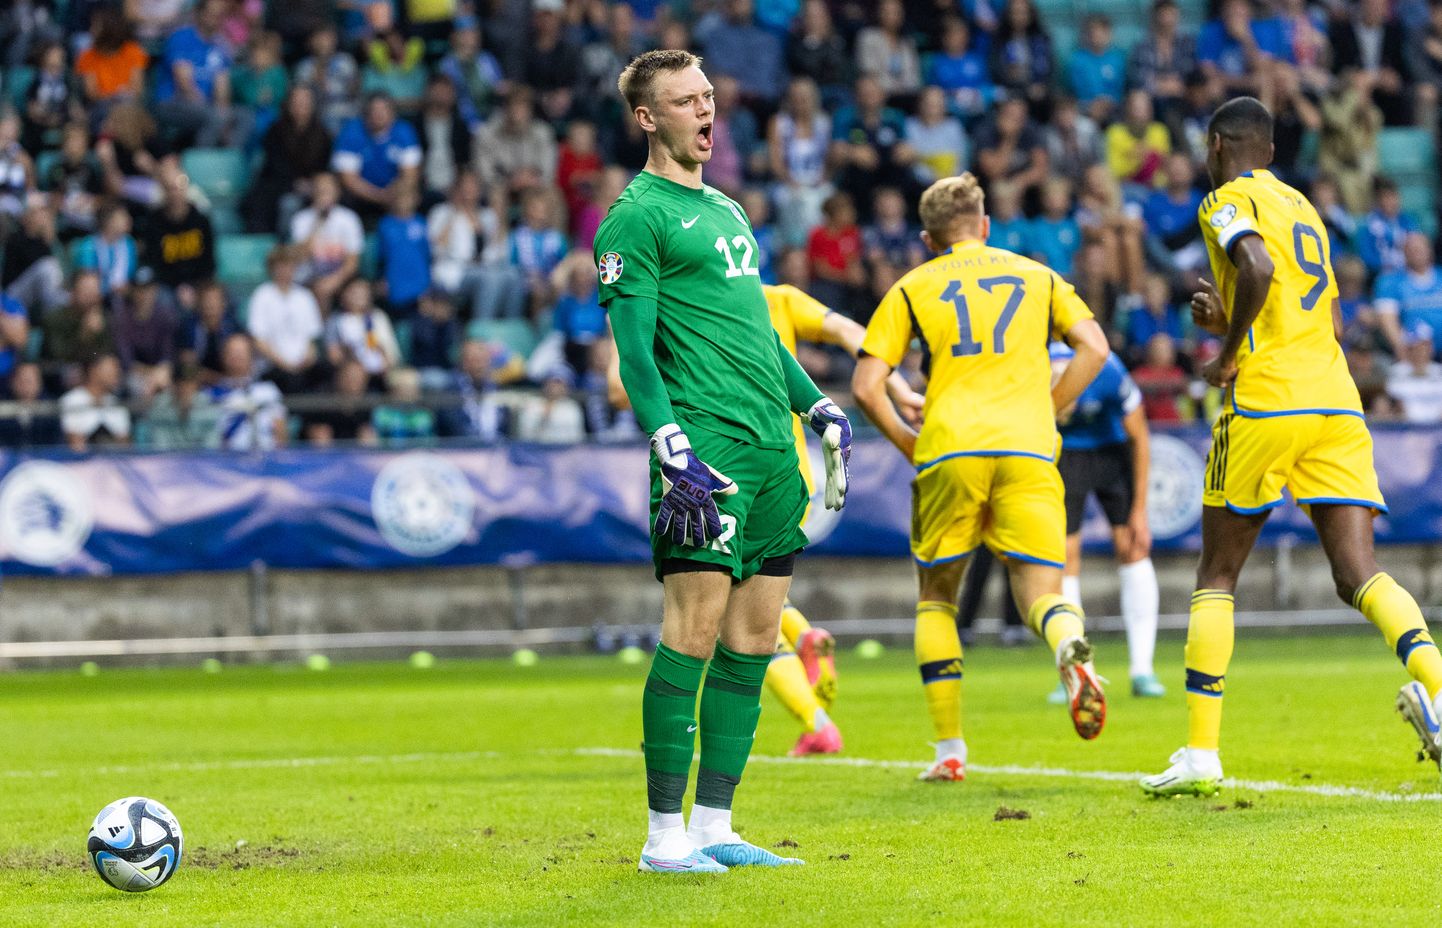 Eesti jalgpallikoondise väravavaht Karl Jakob Hein saab taas Rootsi mängijate vastu end proovile panna.